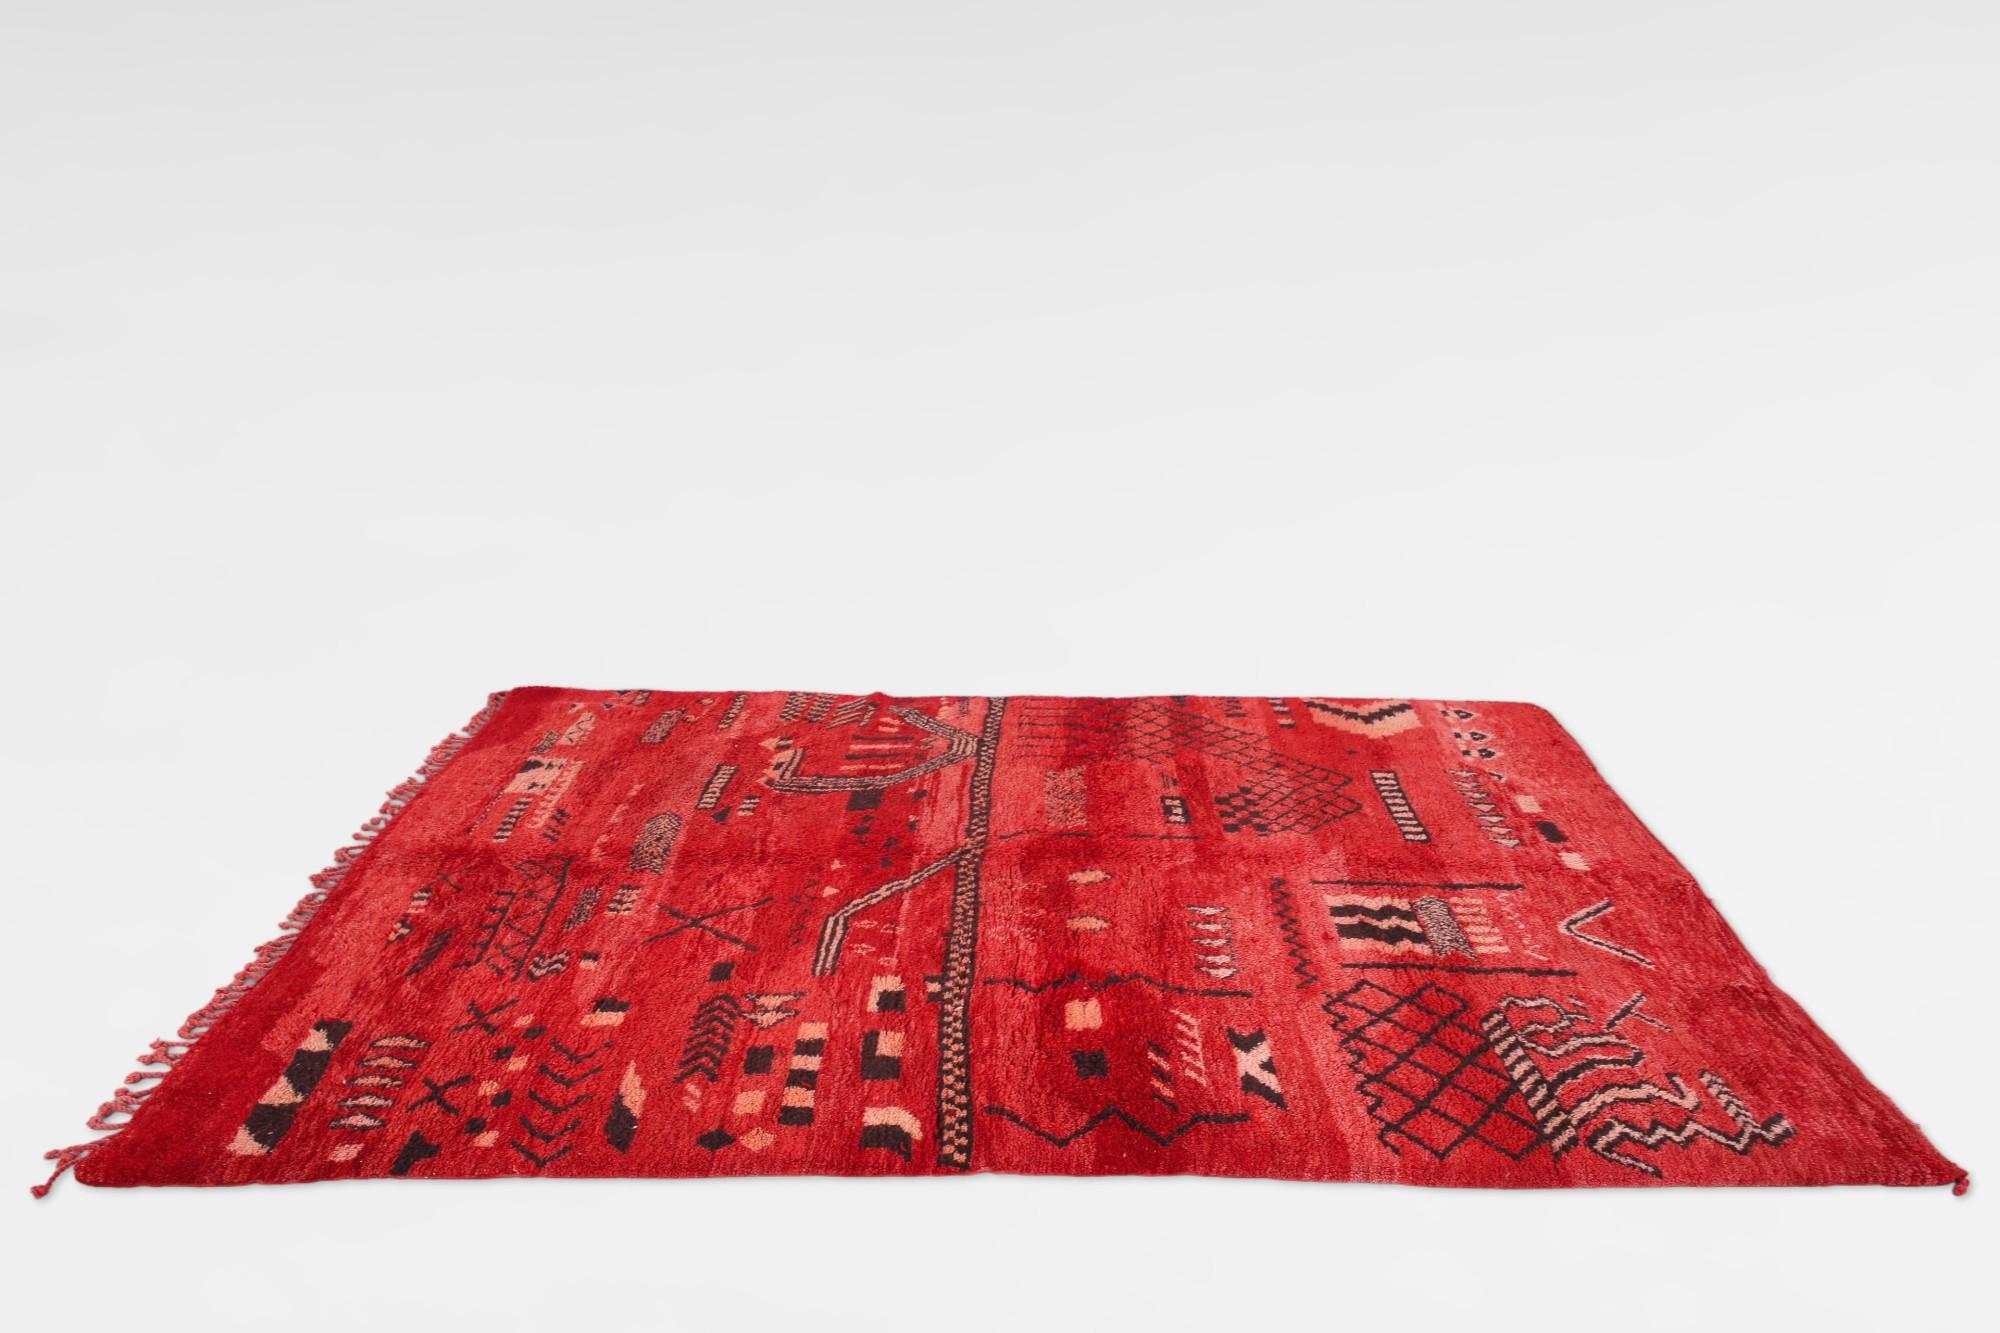 Tapis marocain vintage rouge Beni Mrirt, un symbole intemporel de la tradition du tissage marocain. Fabriqués par les artisans qualifiés de la tribu Beni Mrirt, nichée dans les montagnes de l'Atlas marocain, ces tapis présentent une texture